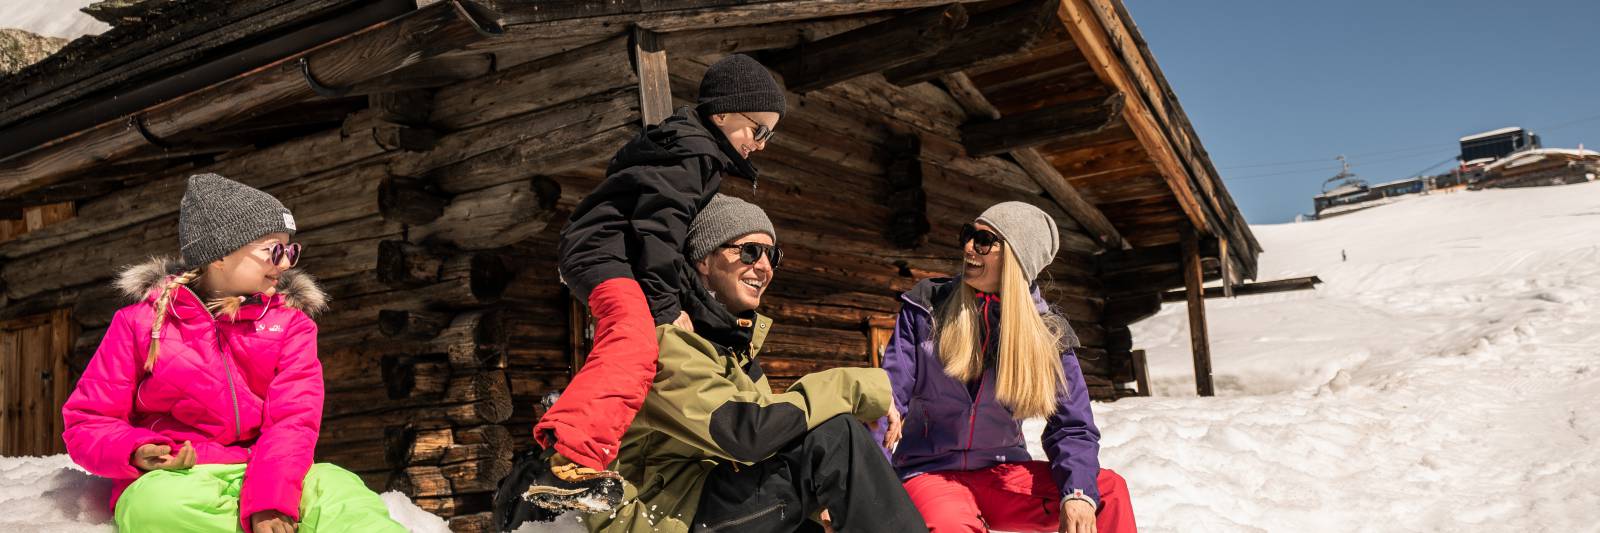 Familie im Schnee am Arhon in Mayrhofen